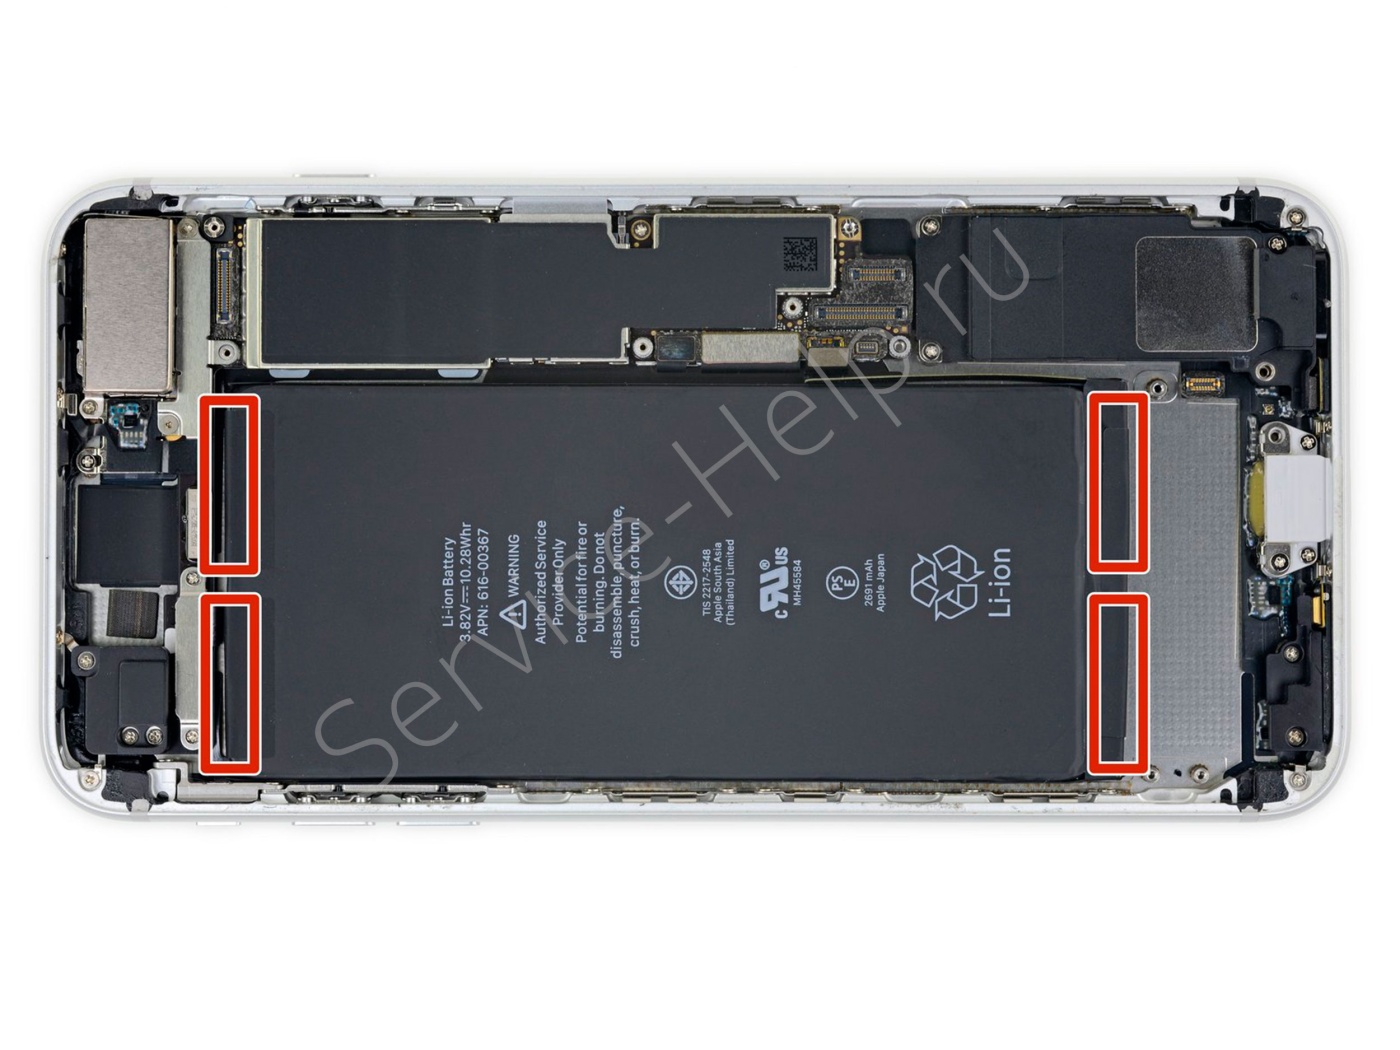 Аккумулятор iPhone 8 Plus держится на четырех клейких полосках